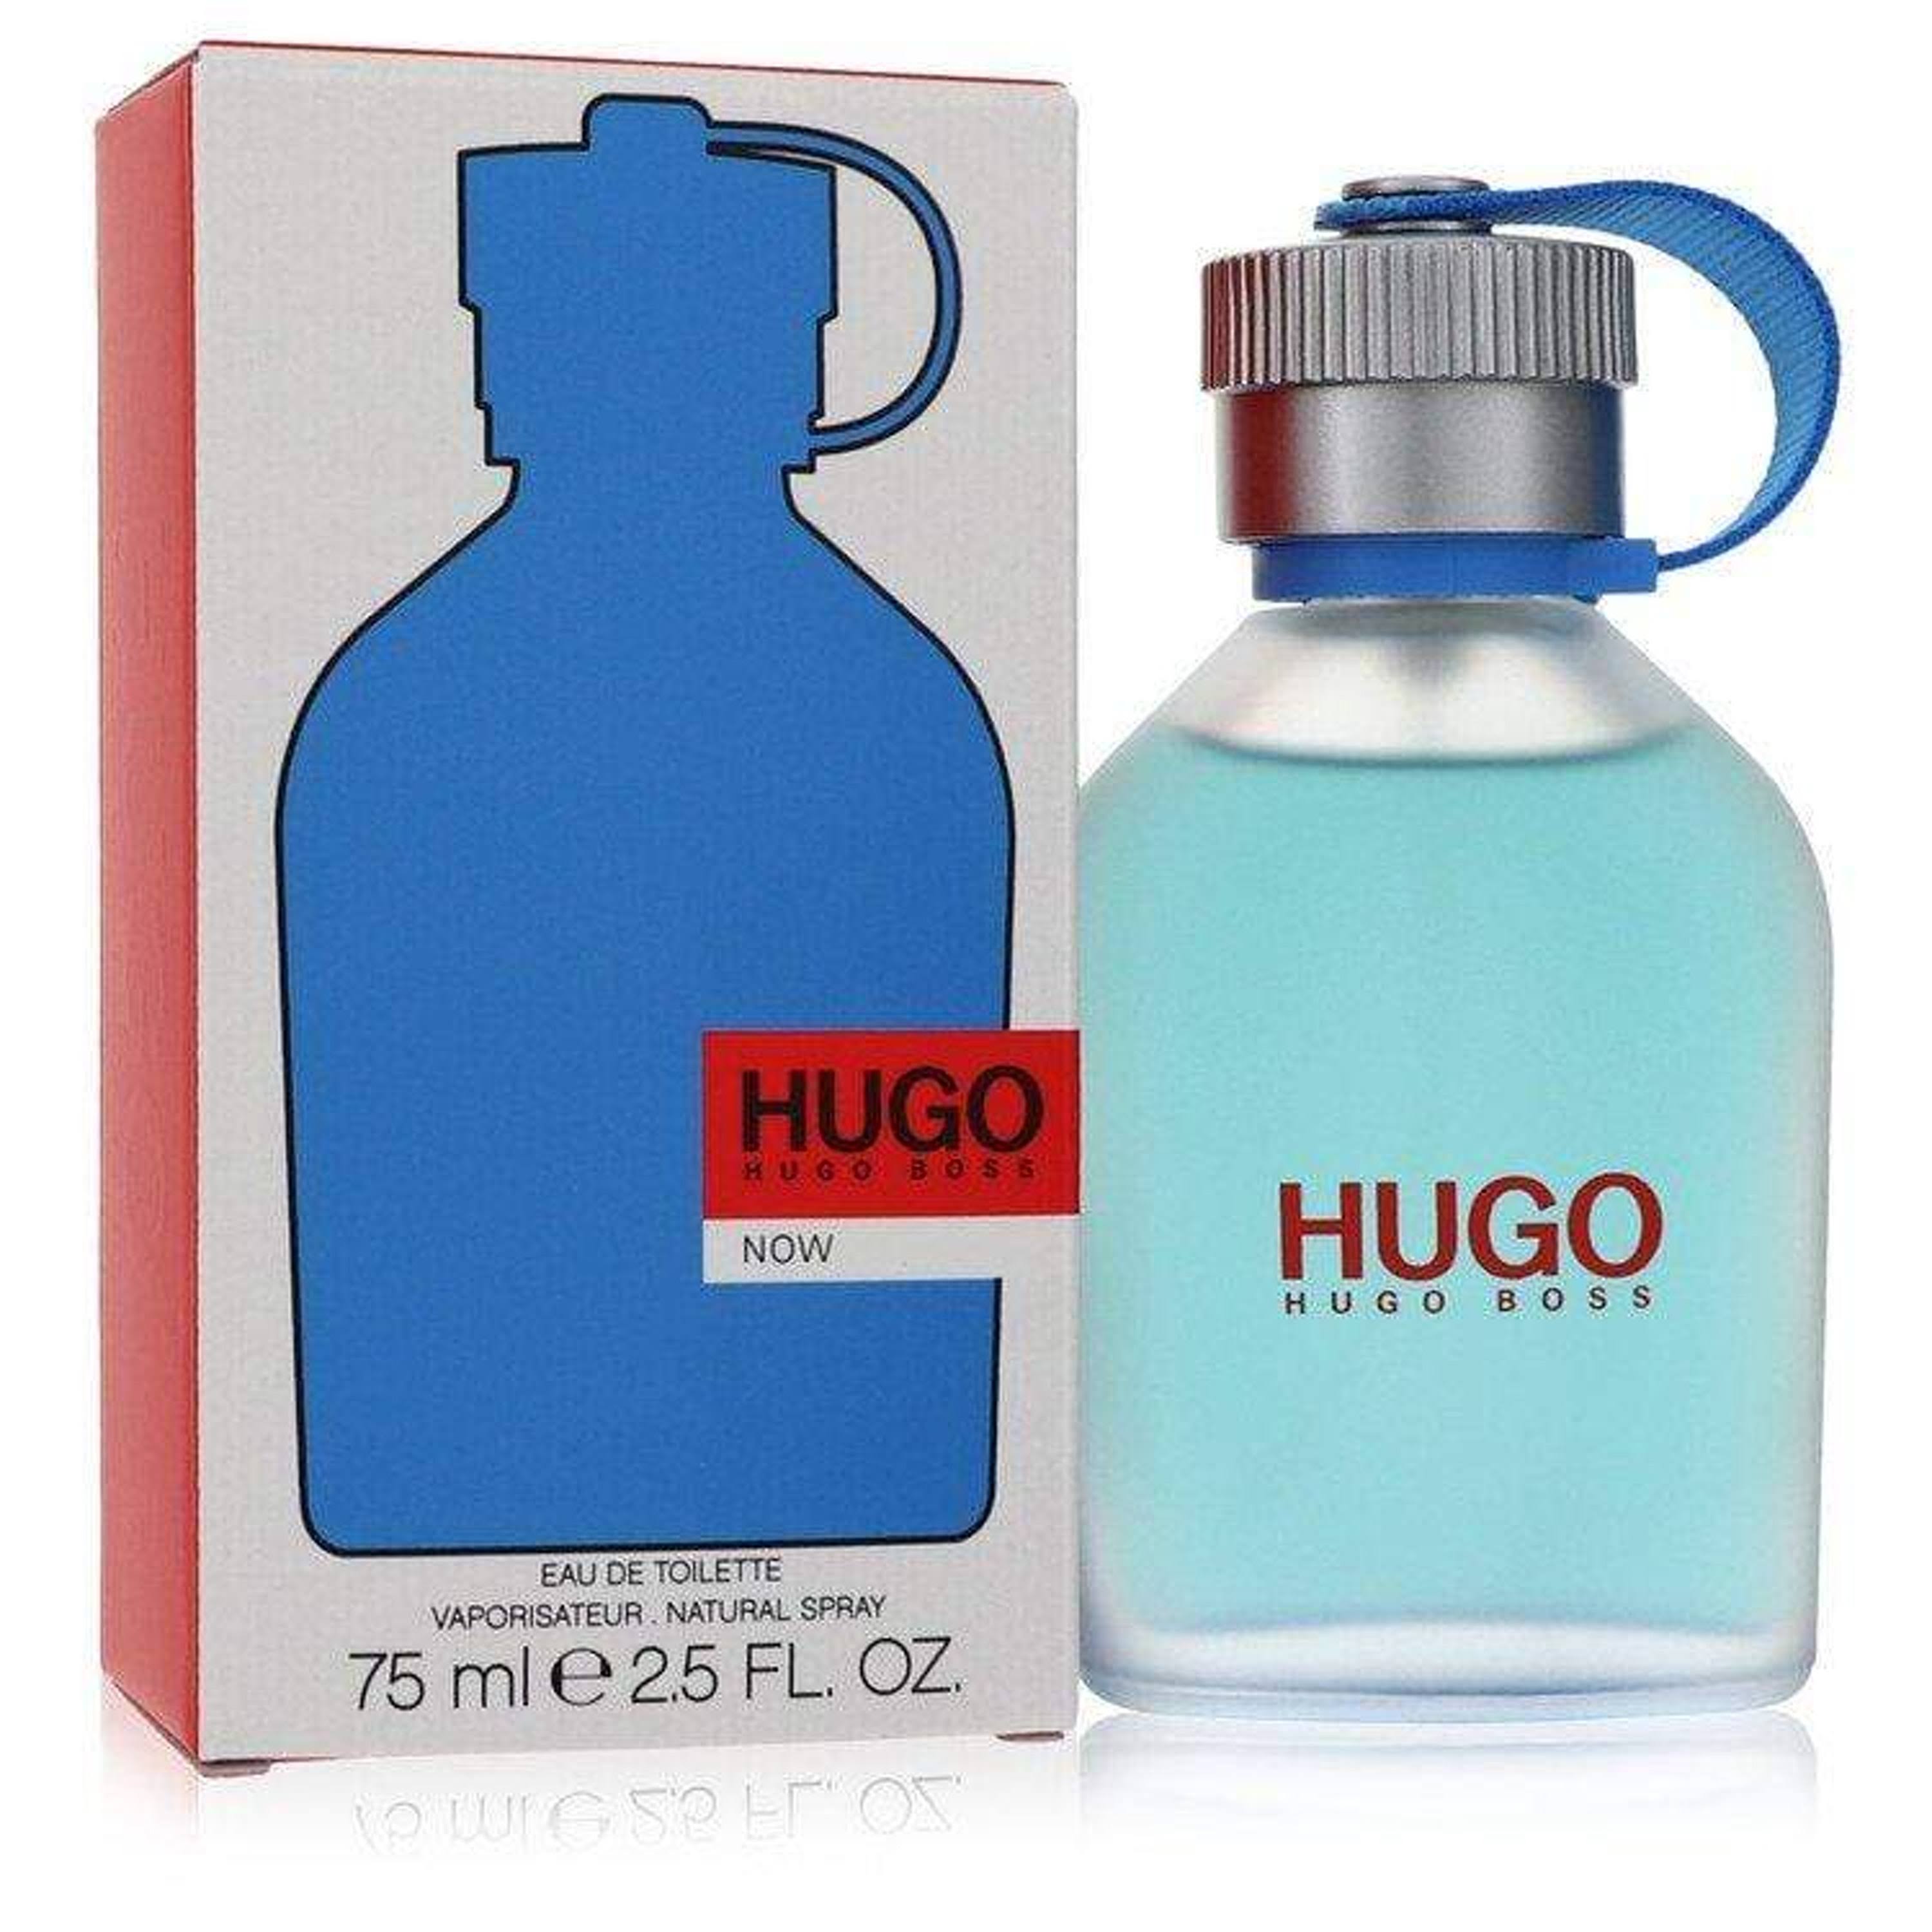 Hugo Boss - Hugo Now Eau de Toilette Spray 75ml / 2.5oz